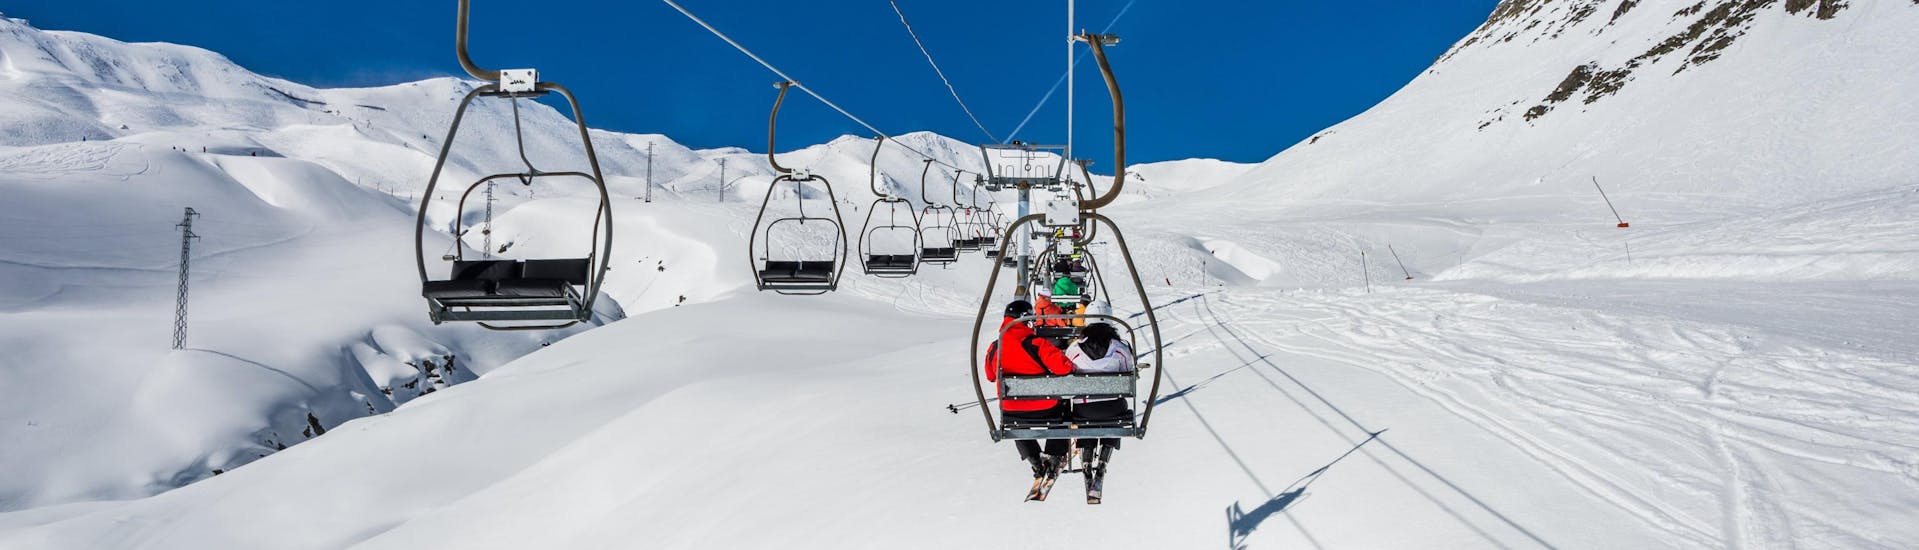 Photo d'une remontée mécanique transportant des skieurs au sommet d'une piste de ski dans la station de ski espagnole de Formigal, où les visiteurs qui veulent apprendre à skier peuvent réserver des cours de ski auprès des écoles de ski locales.